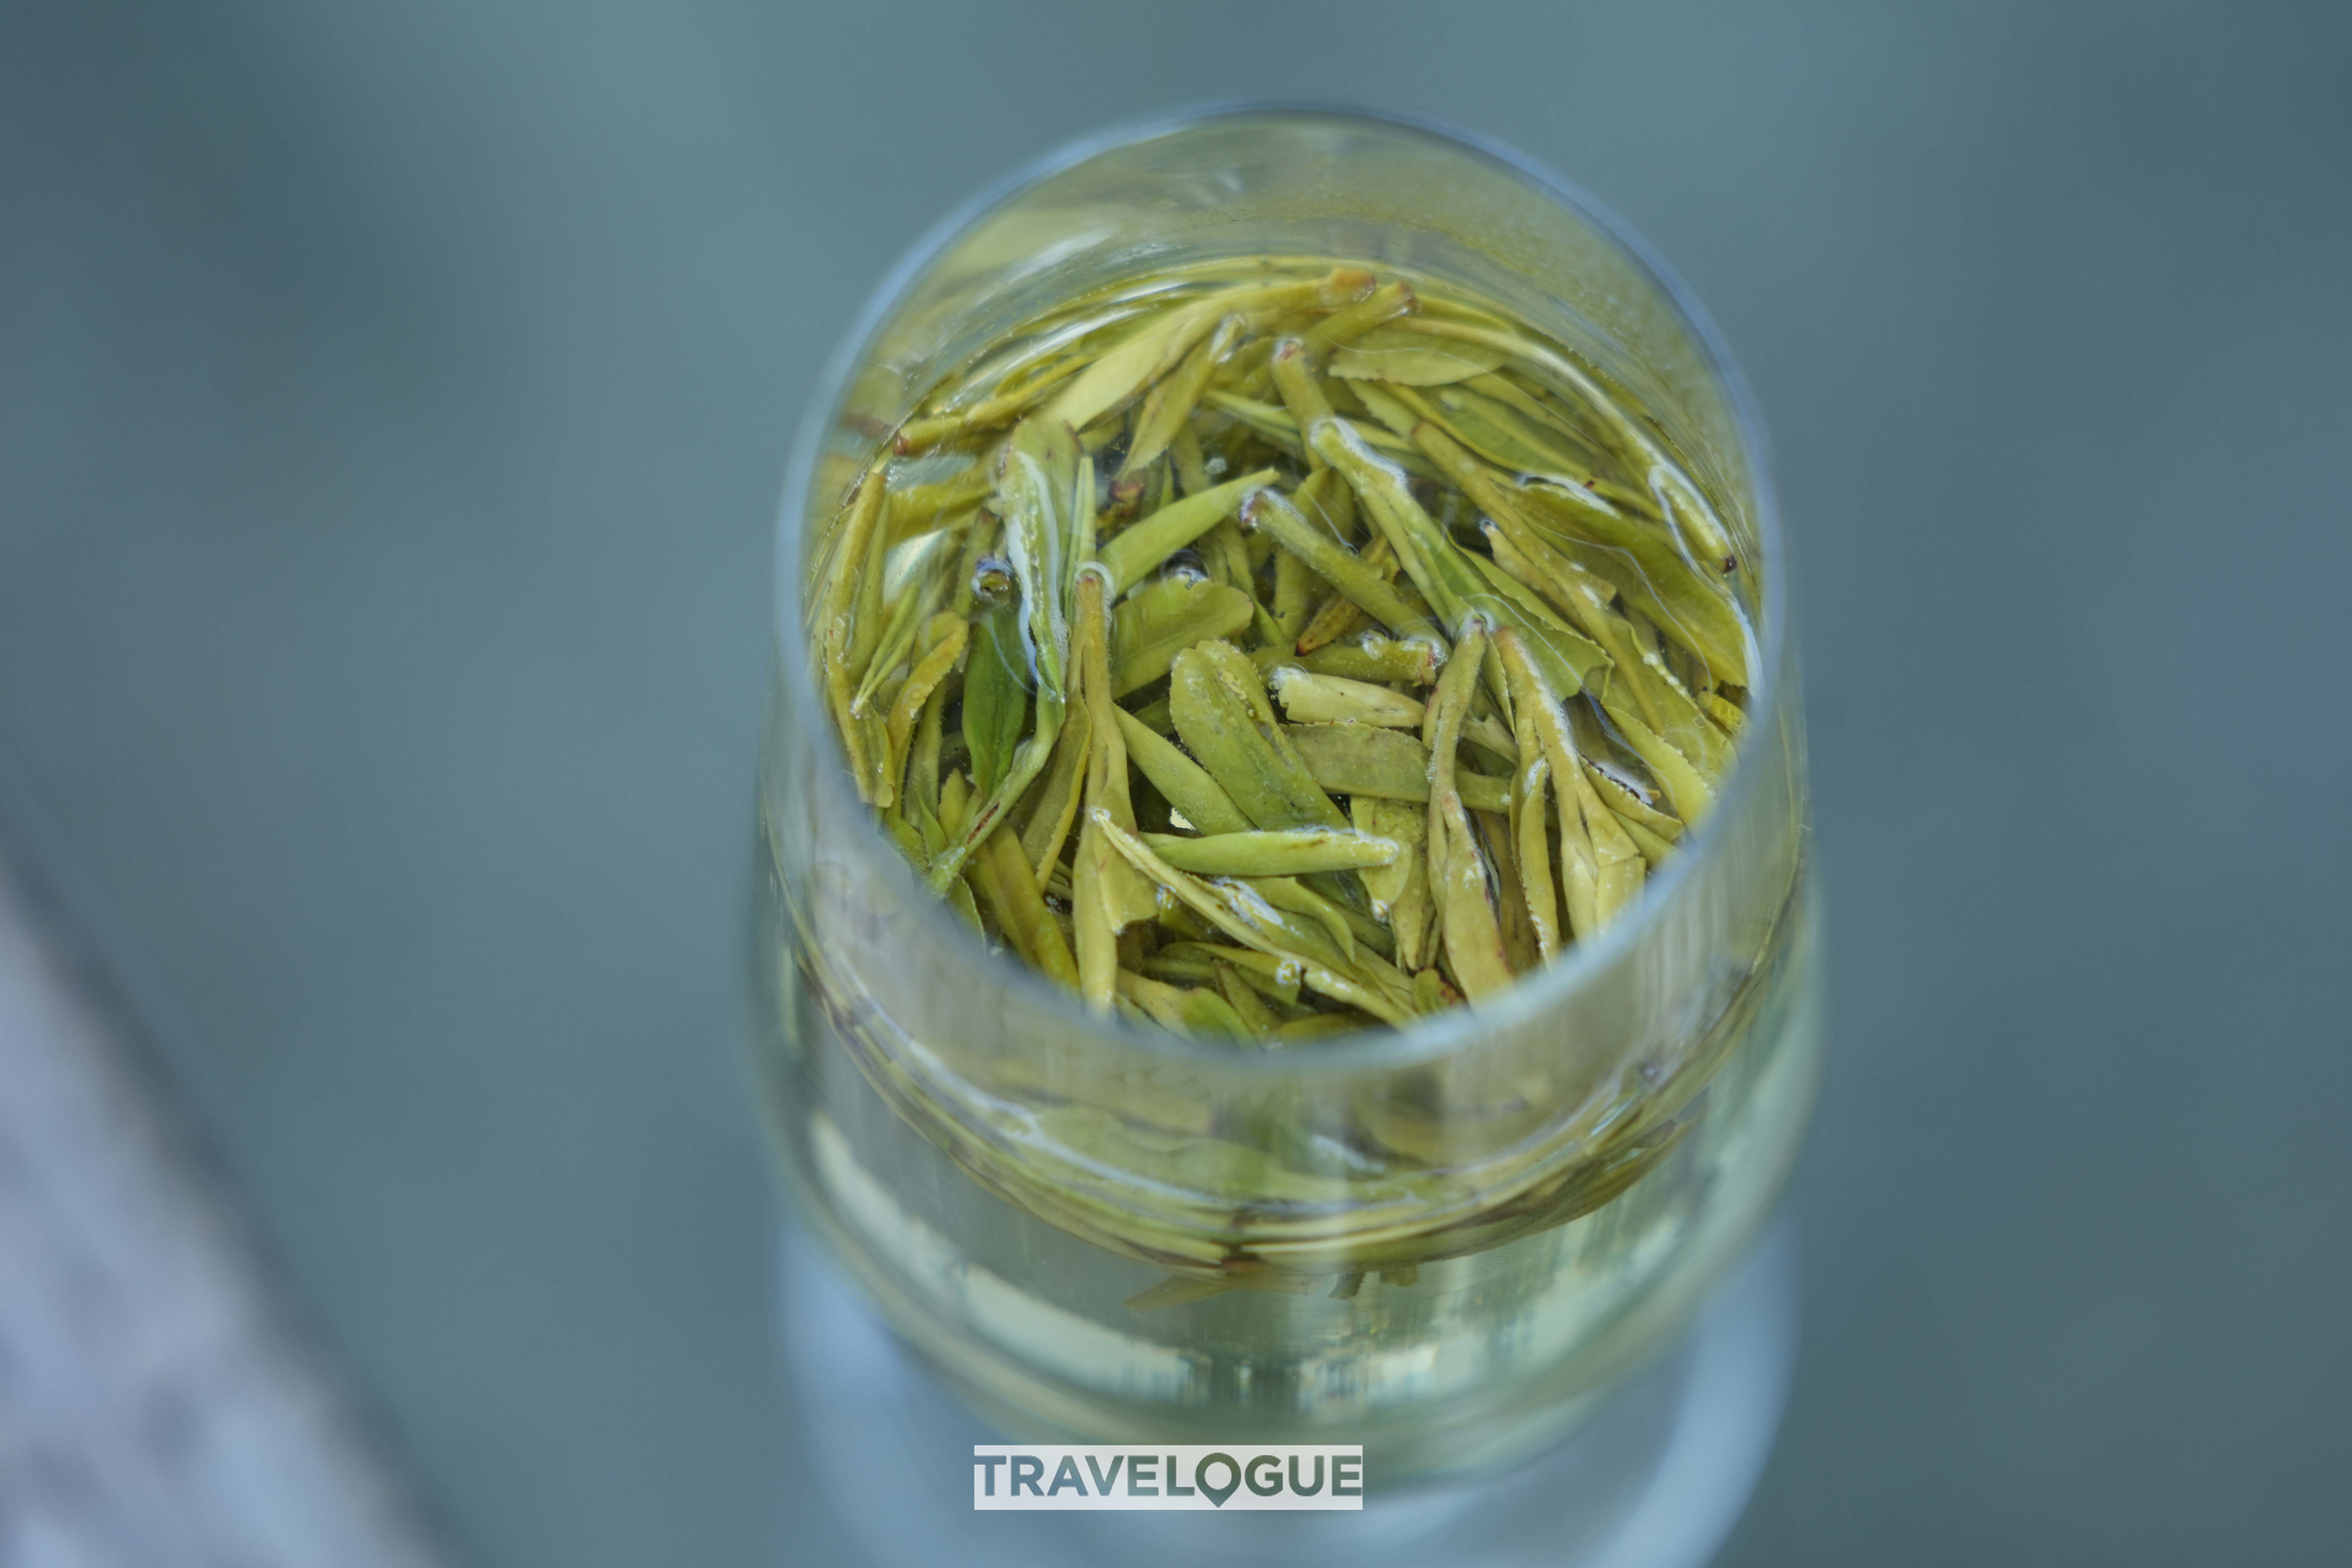 This undated photo shows a glass of Longjing tea in Hangzhou, east China's Zhejiang Province. /CGTN